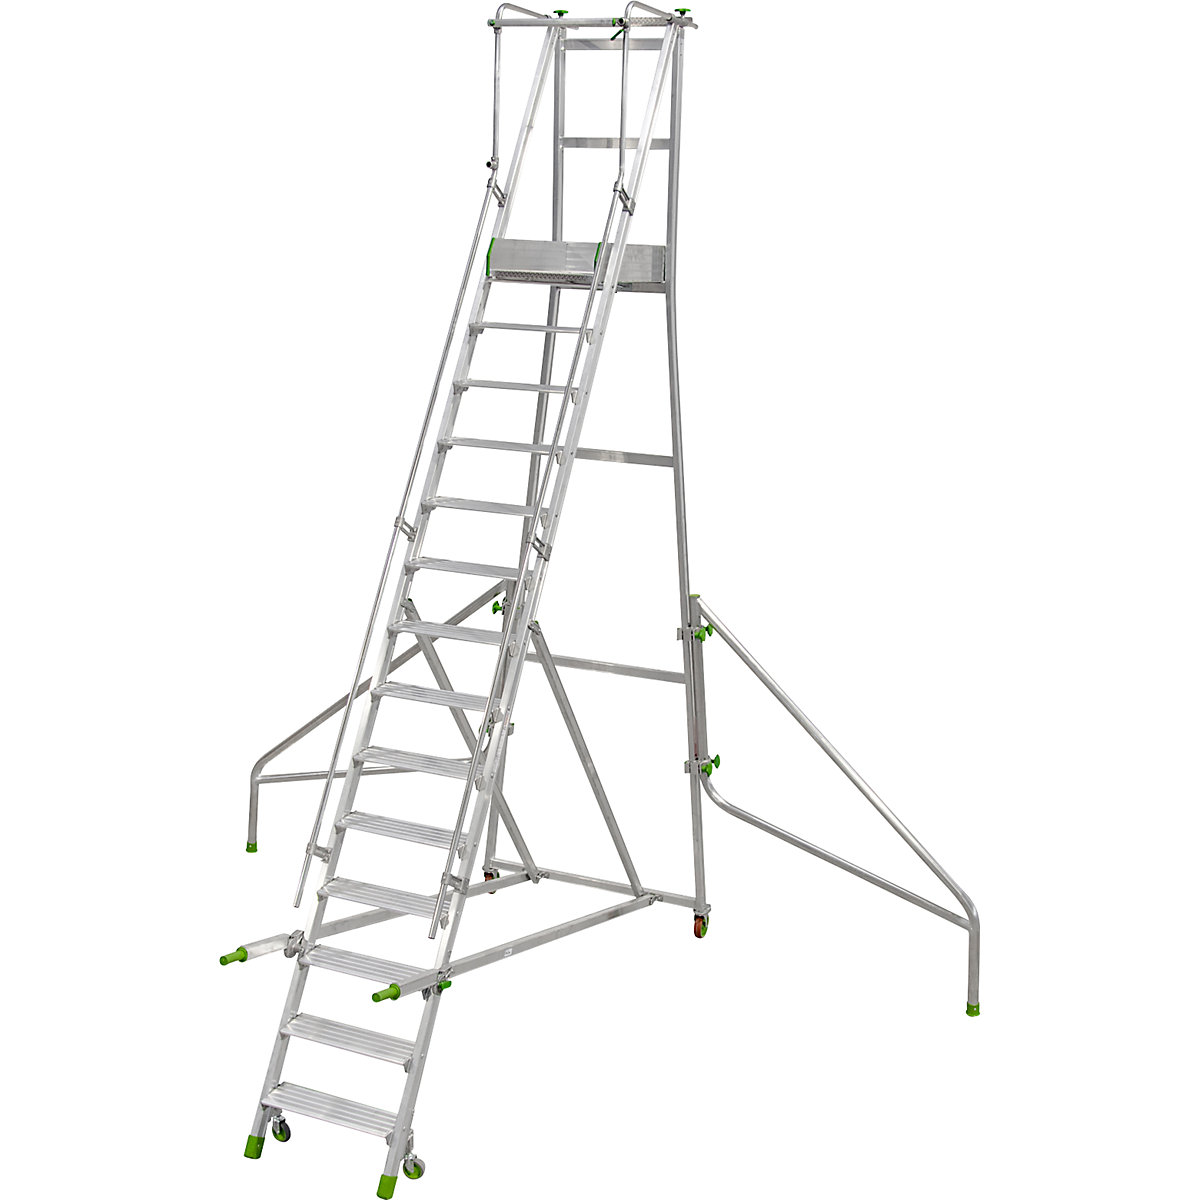 Mobile Alu-Podesttreppe, klappbar, mit gerieften Aluminiumstufen, 14 Stufen inkl. Plattform